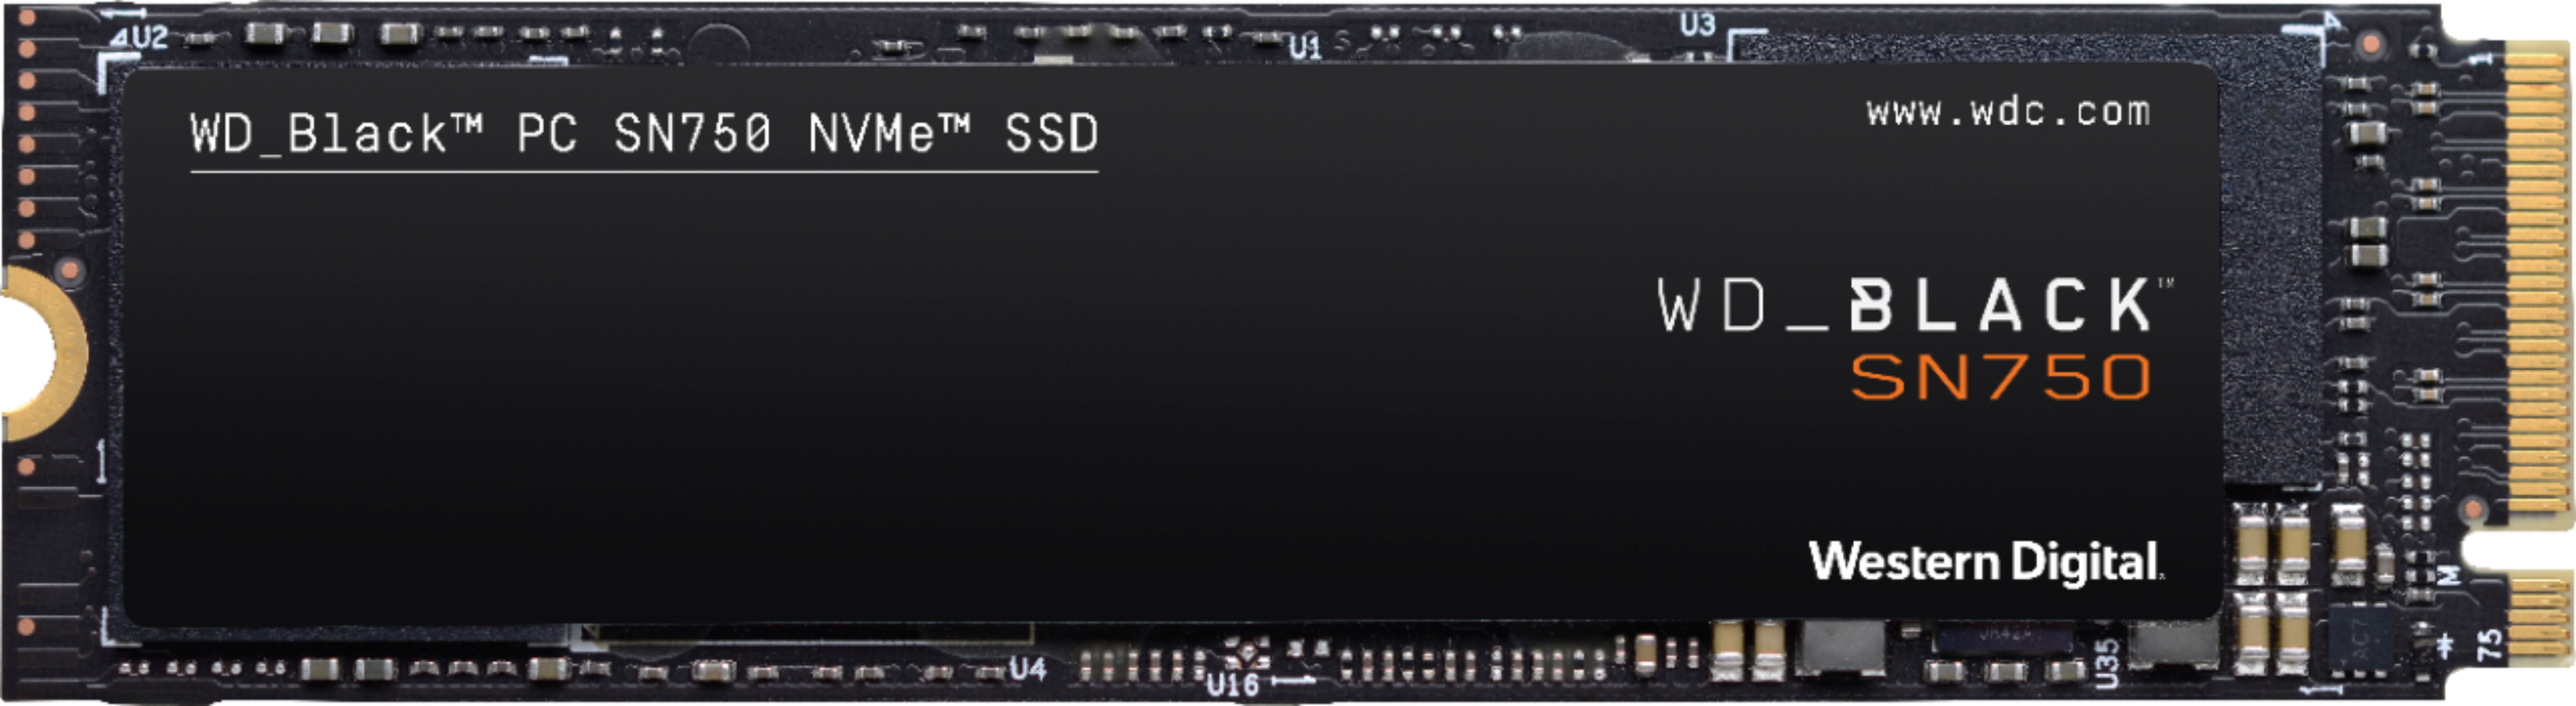 WD BLACK SN750 1TB Internal Gaming SSD PCIe Gen 3  - Best Buy